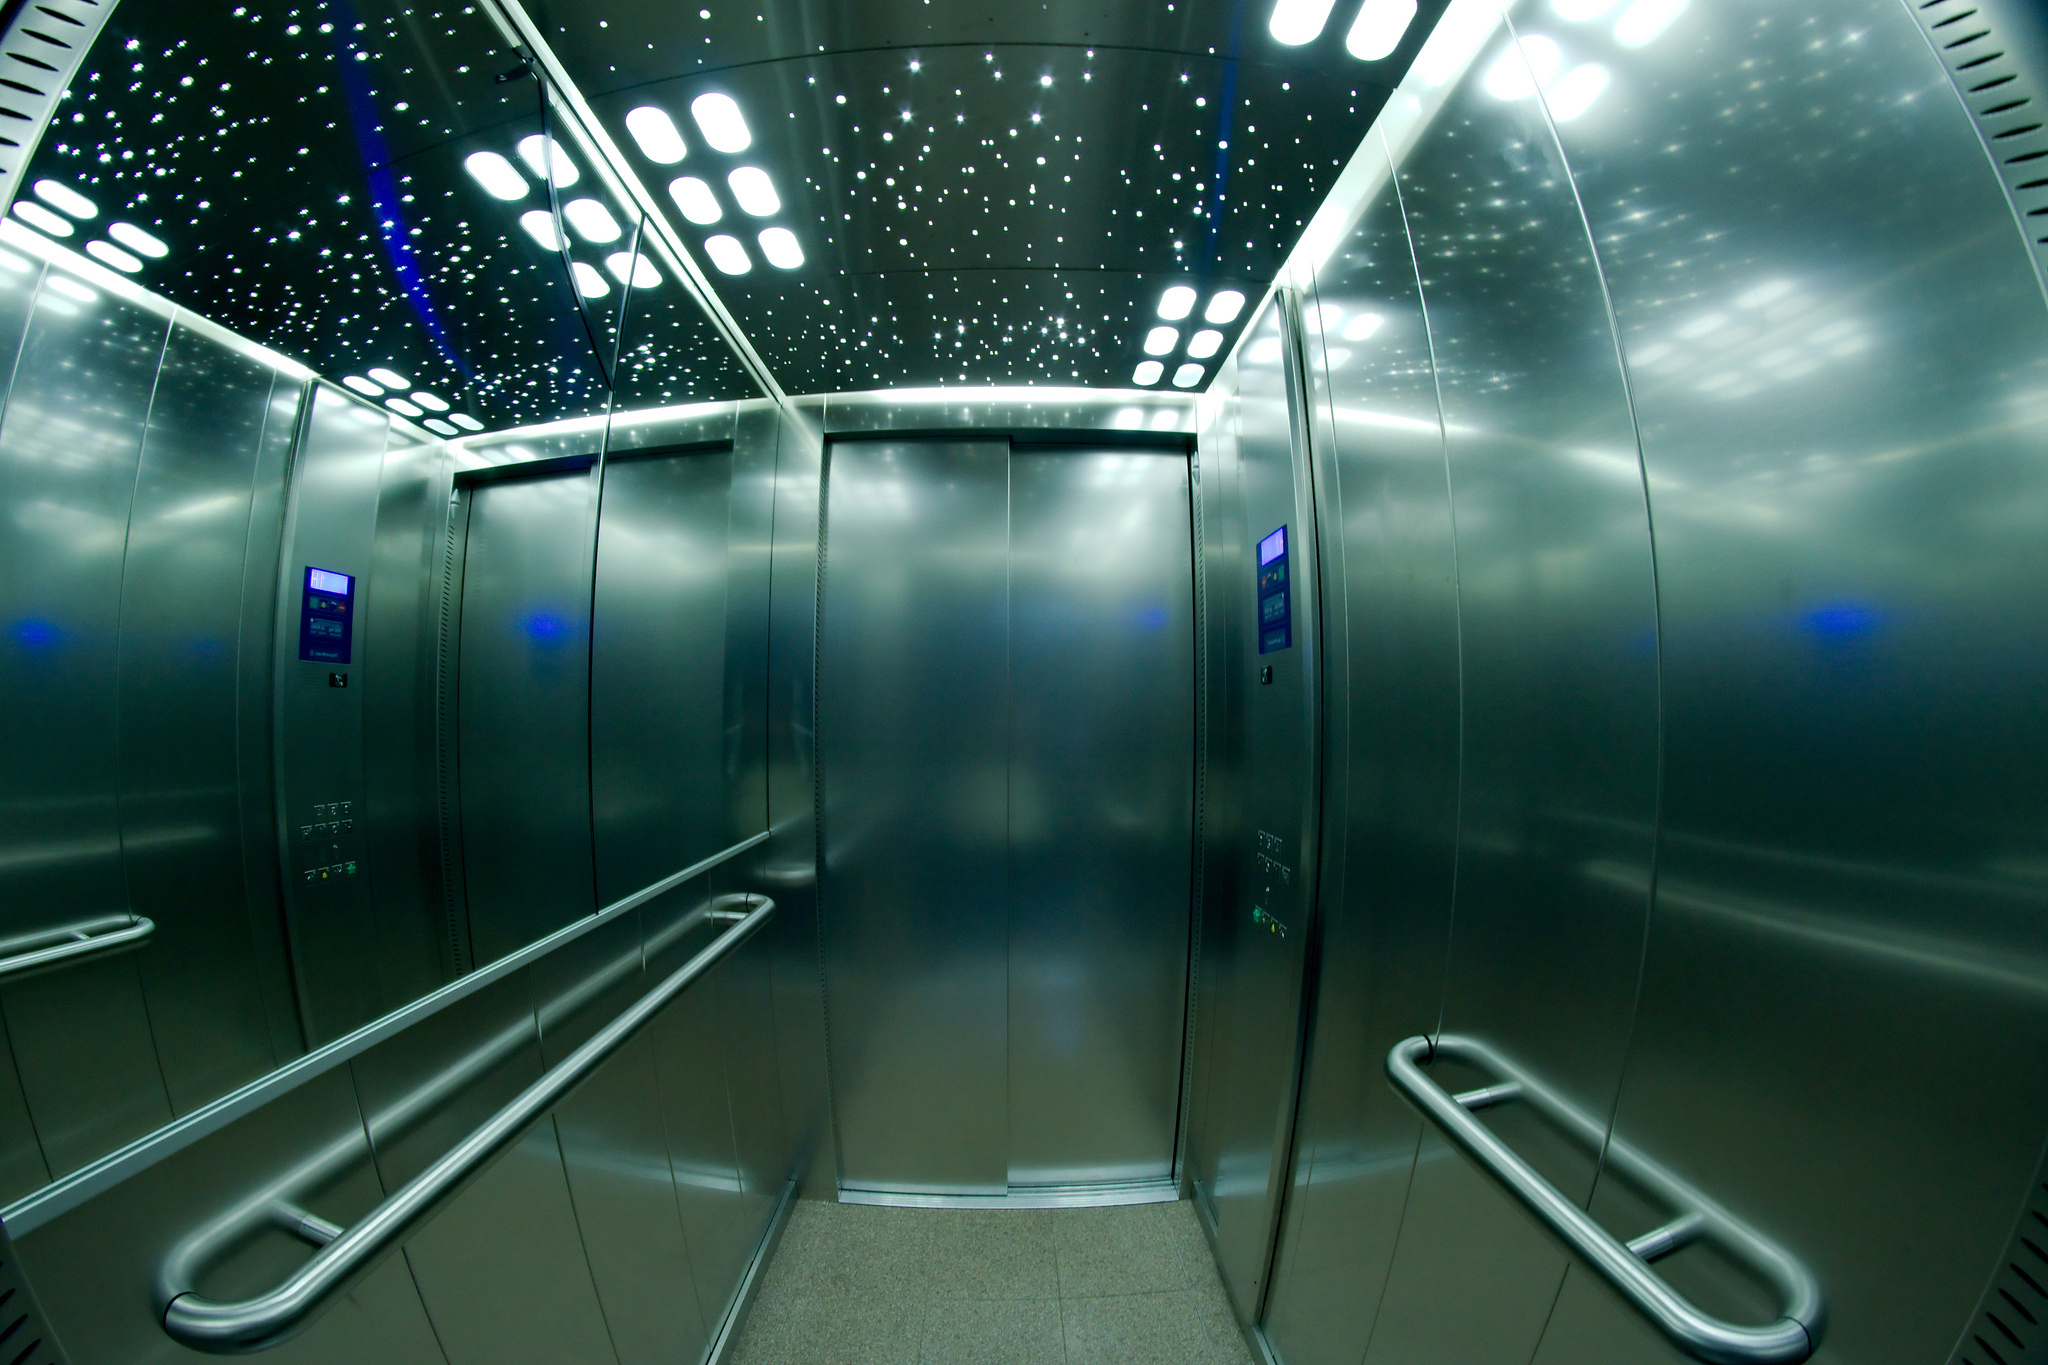 La limite de vitesse des ascenseurs n’est pas fixée par la technologie, mais par la physiologie humaine. © Frédéric BISSON, Flickr, CC by 2.0